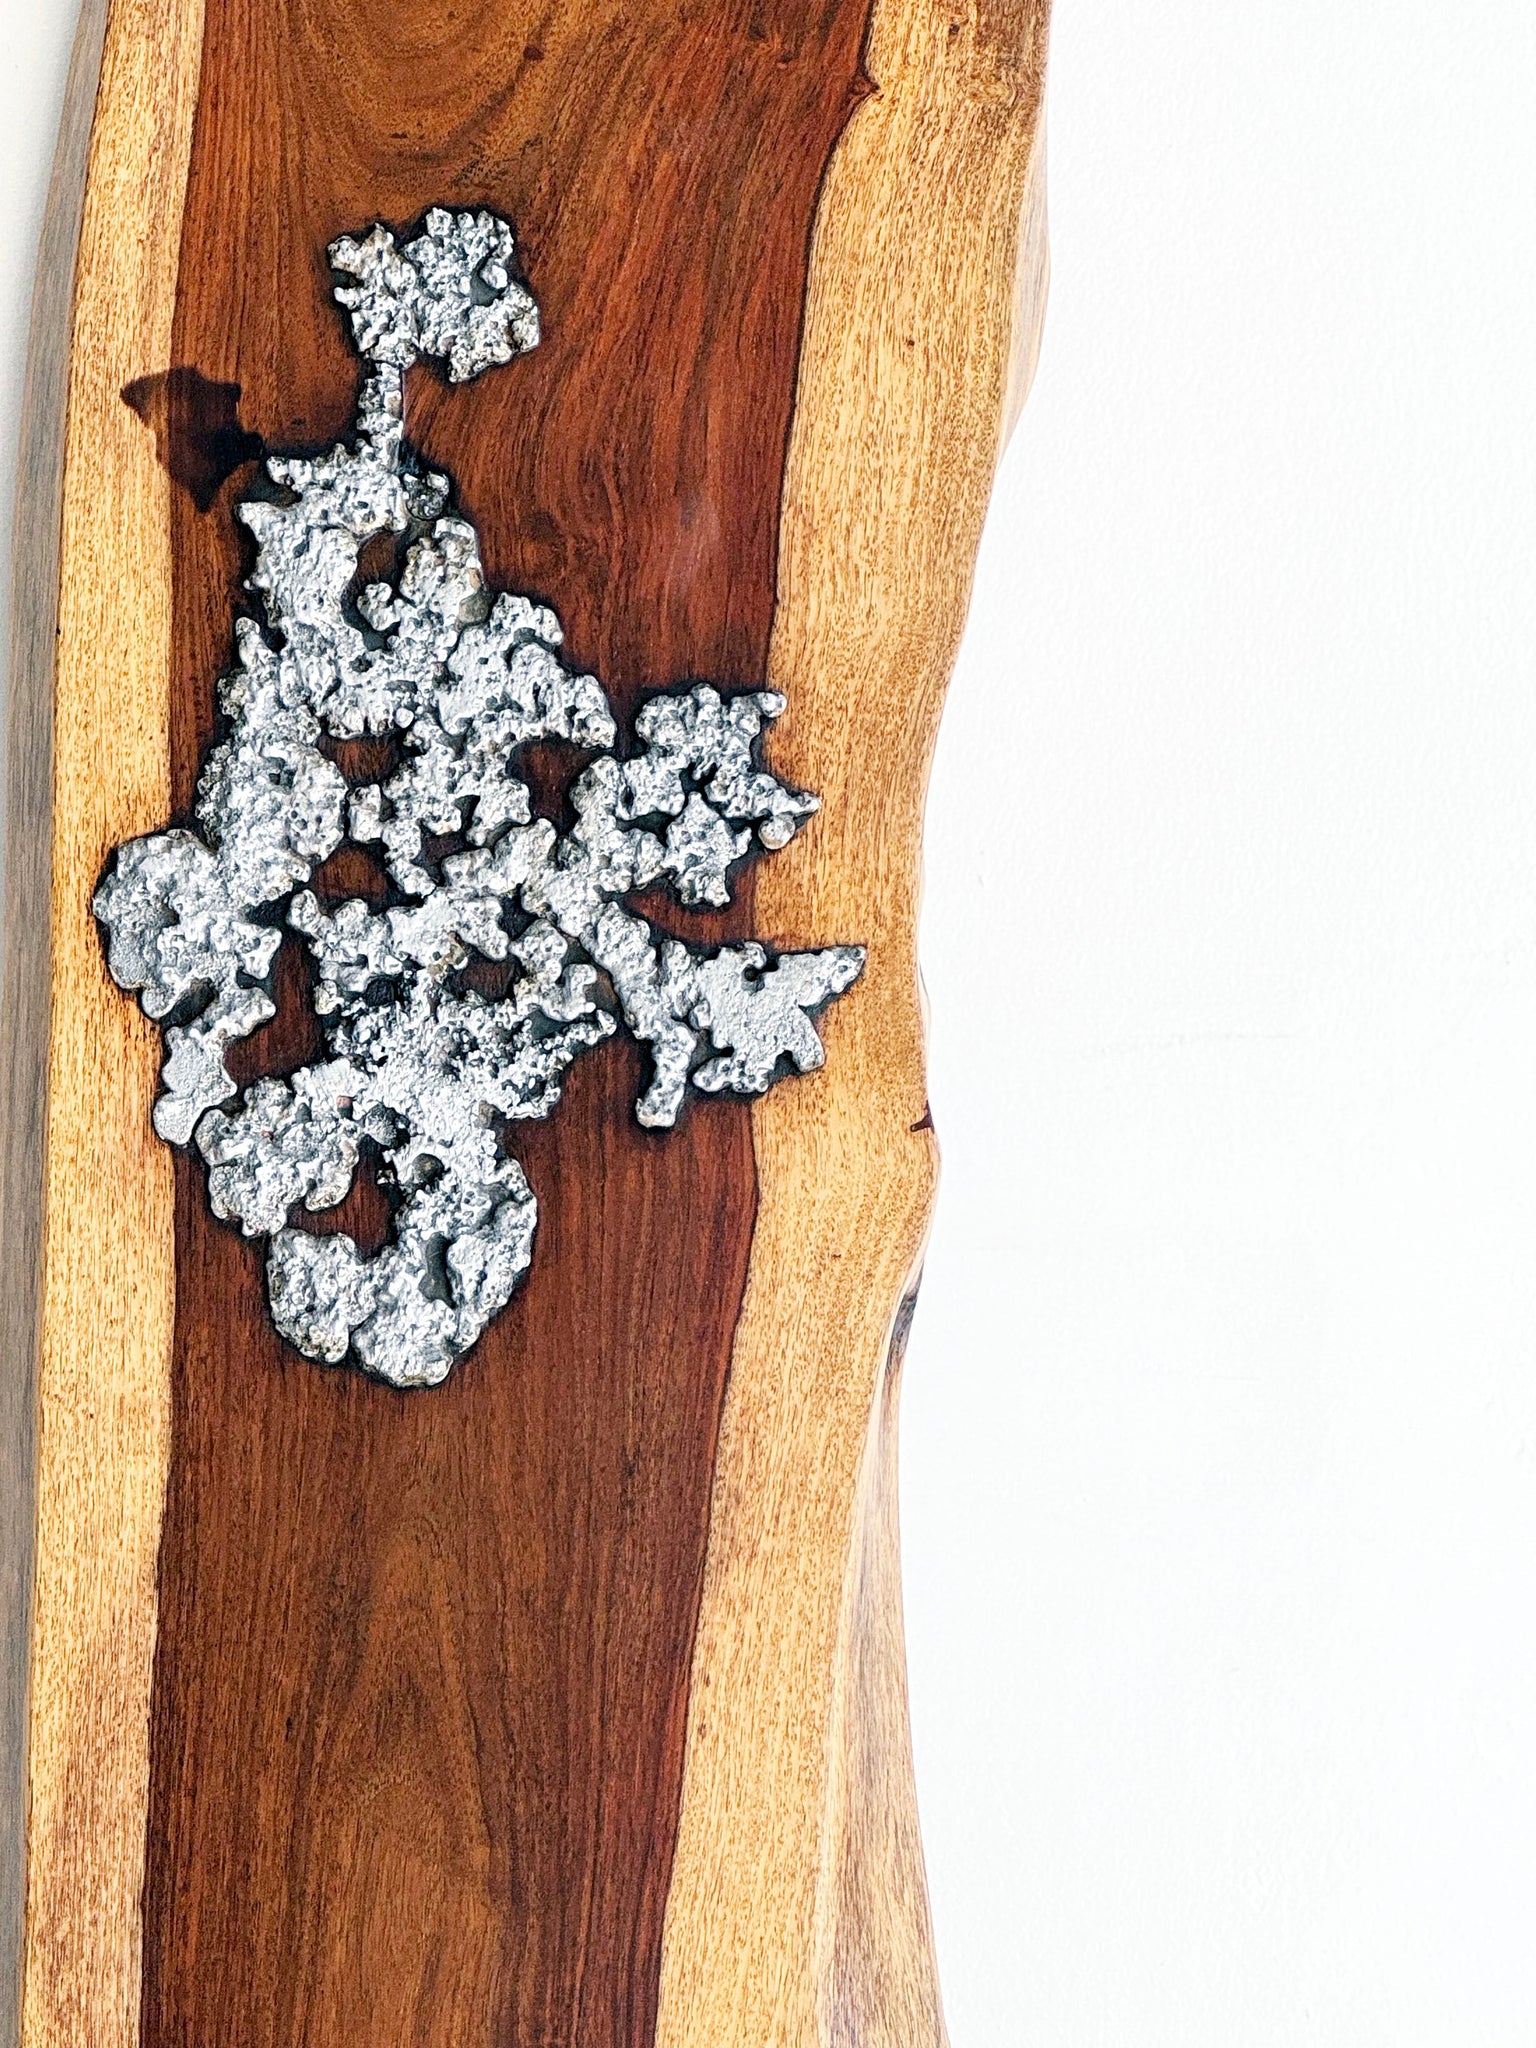 Molten Aluminium on Wood // 05